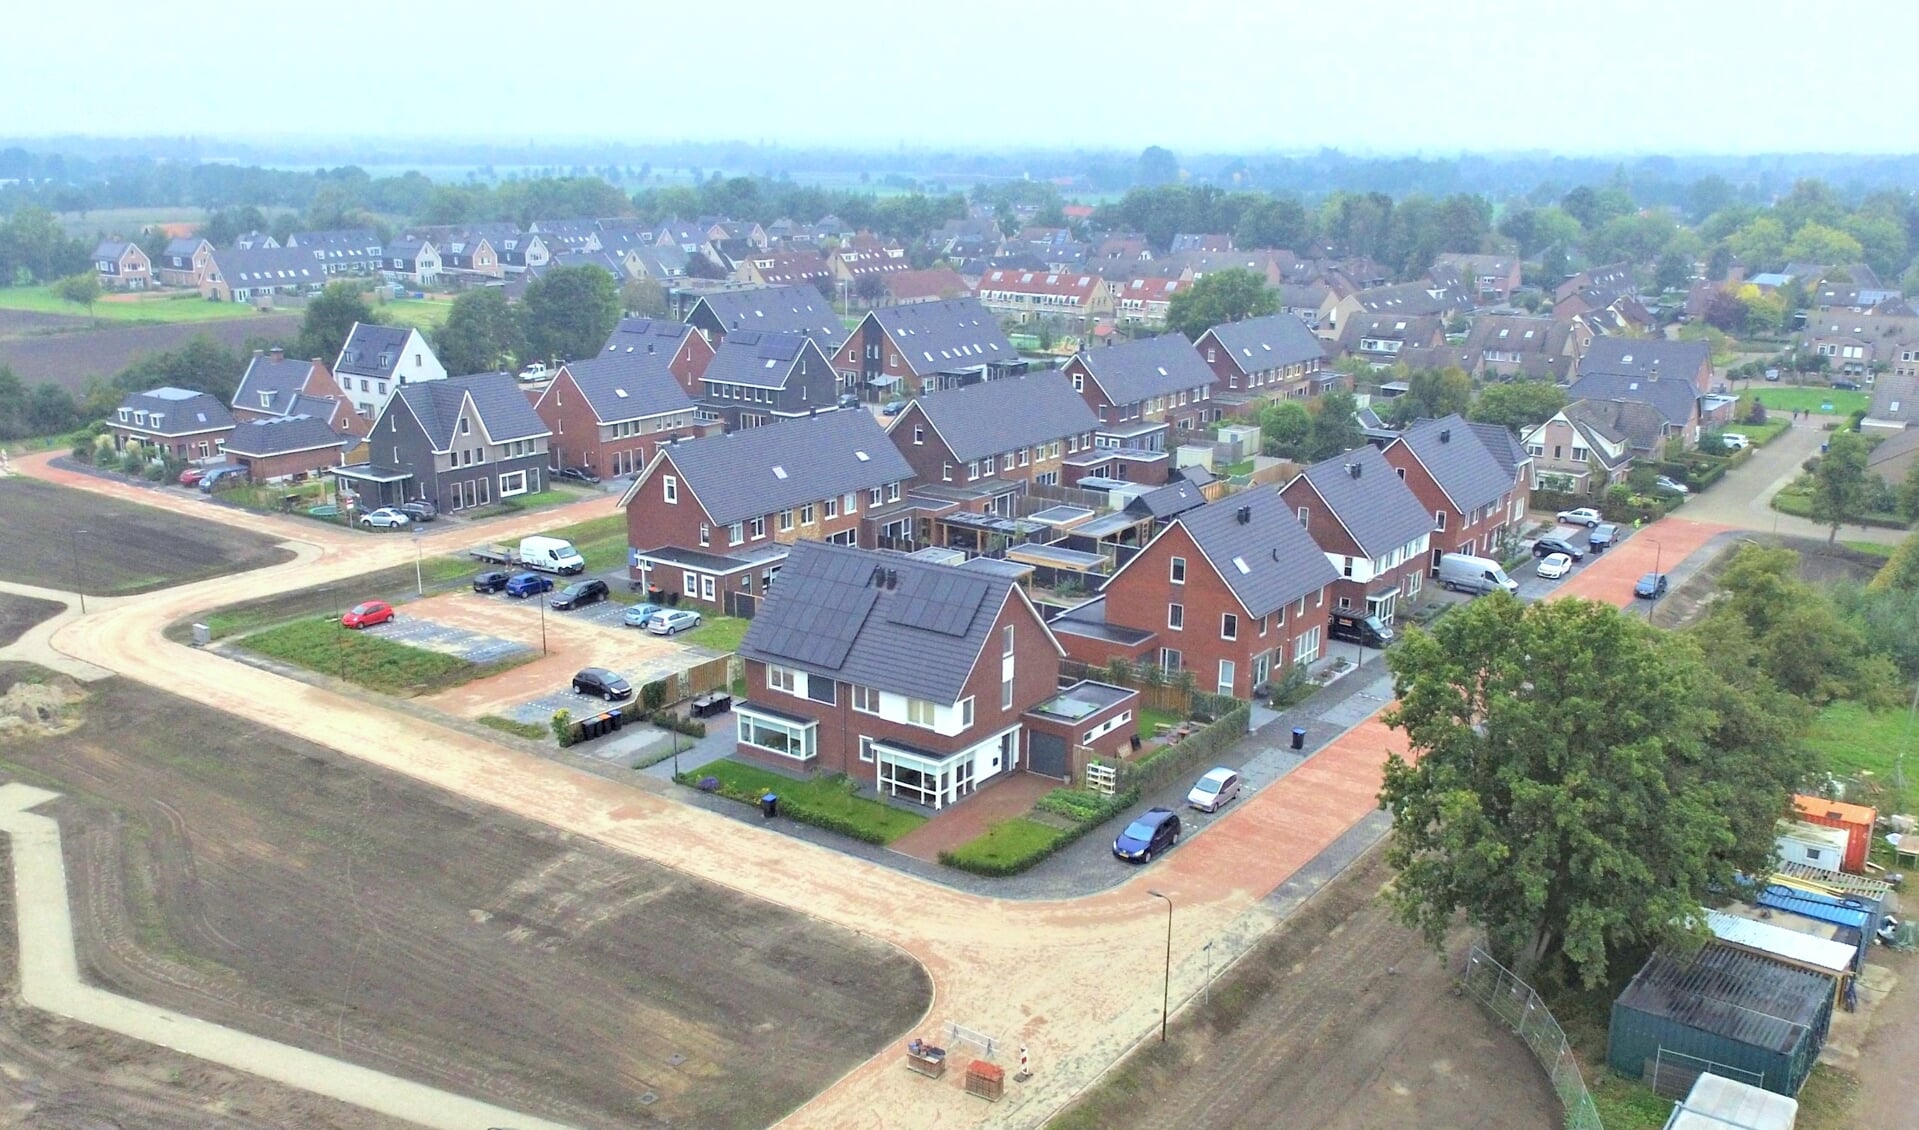 Dwarsakker in Terschuur is een van de meest recente nieuwe bouwprojecten in de gemeente Barneveld. 